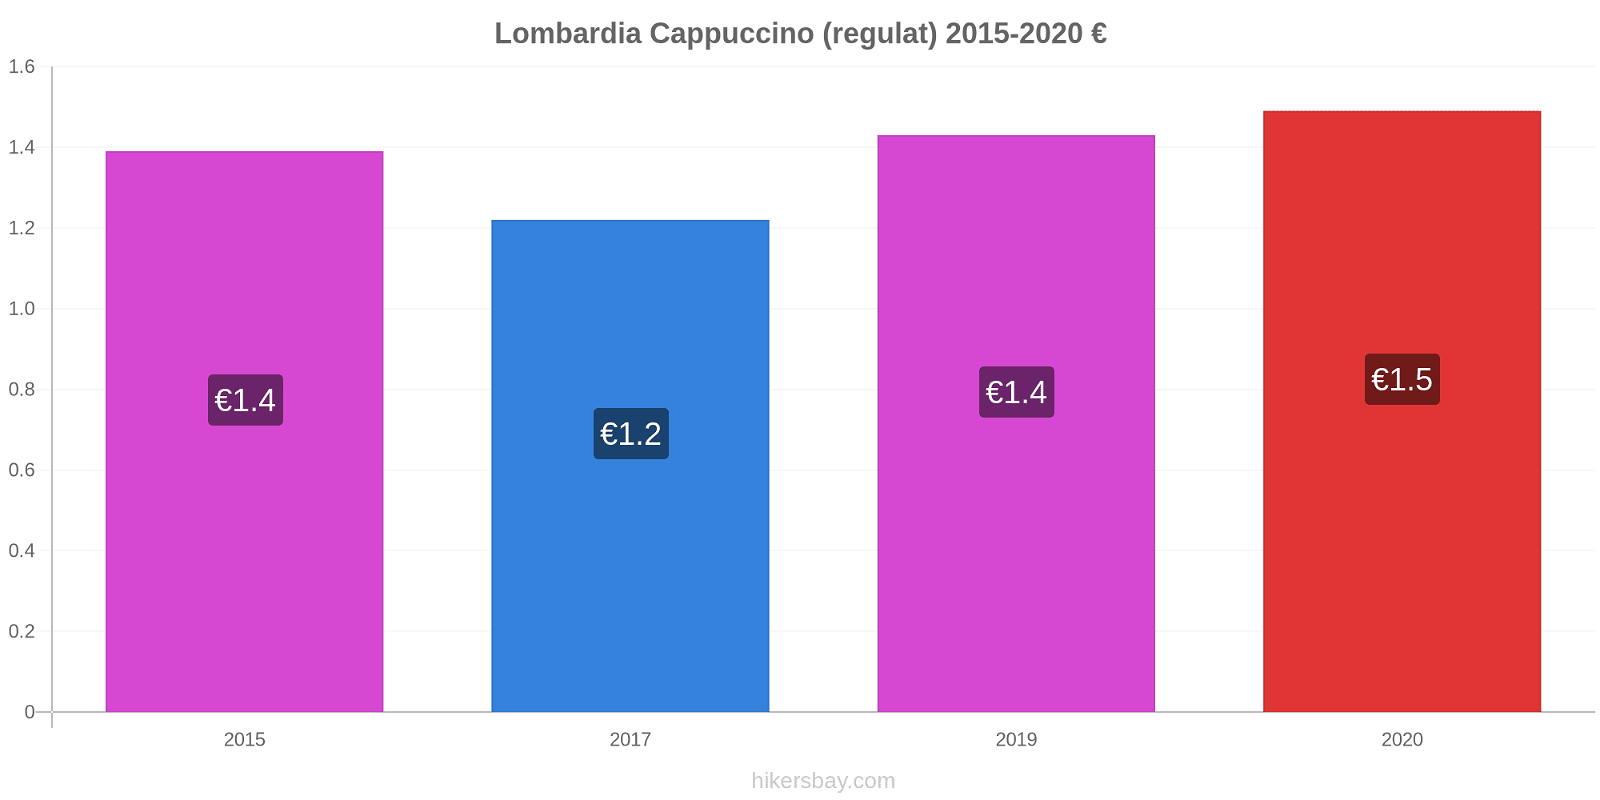 Lombardia modificări de preț Cappuccino (regulat) hikersbay.com